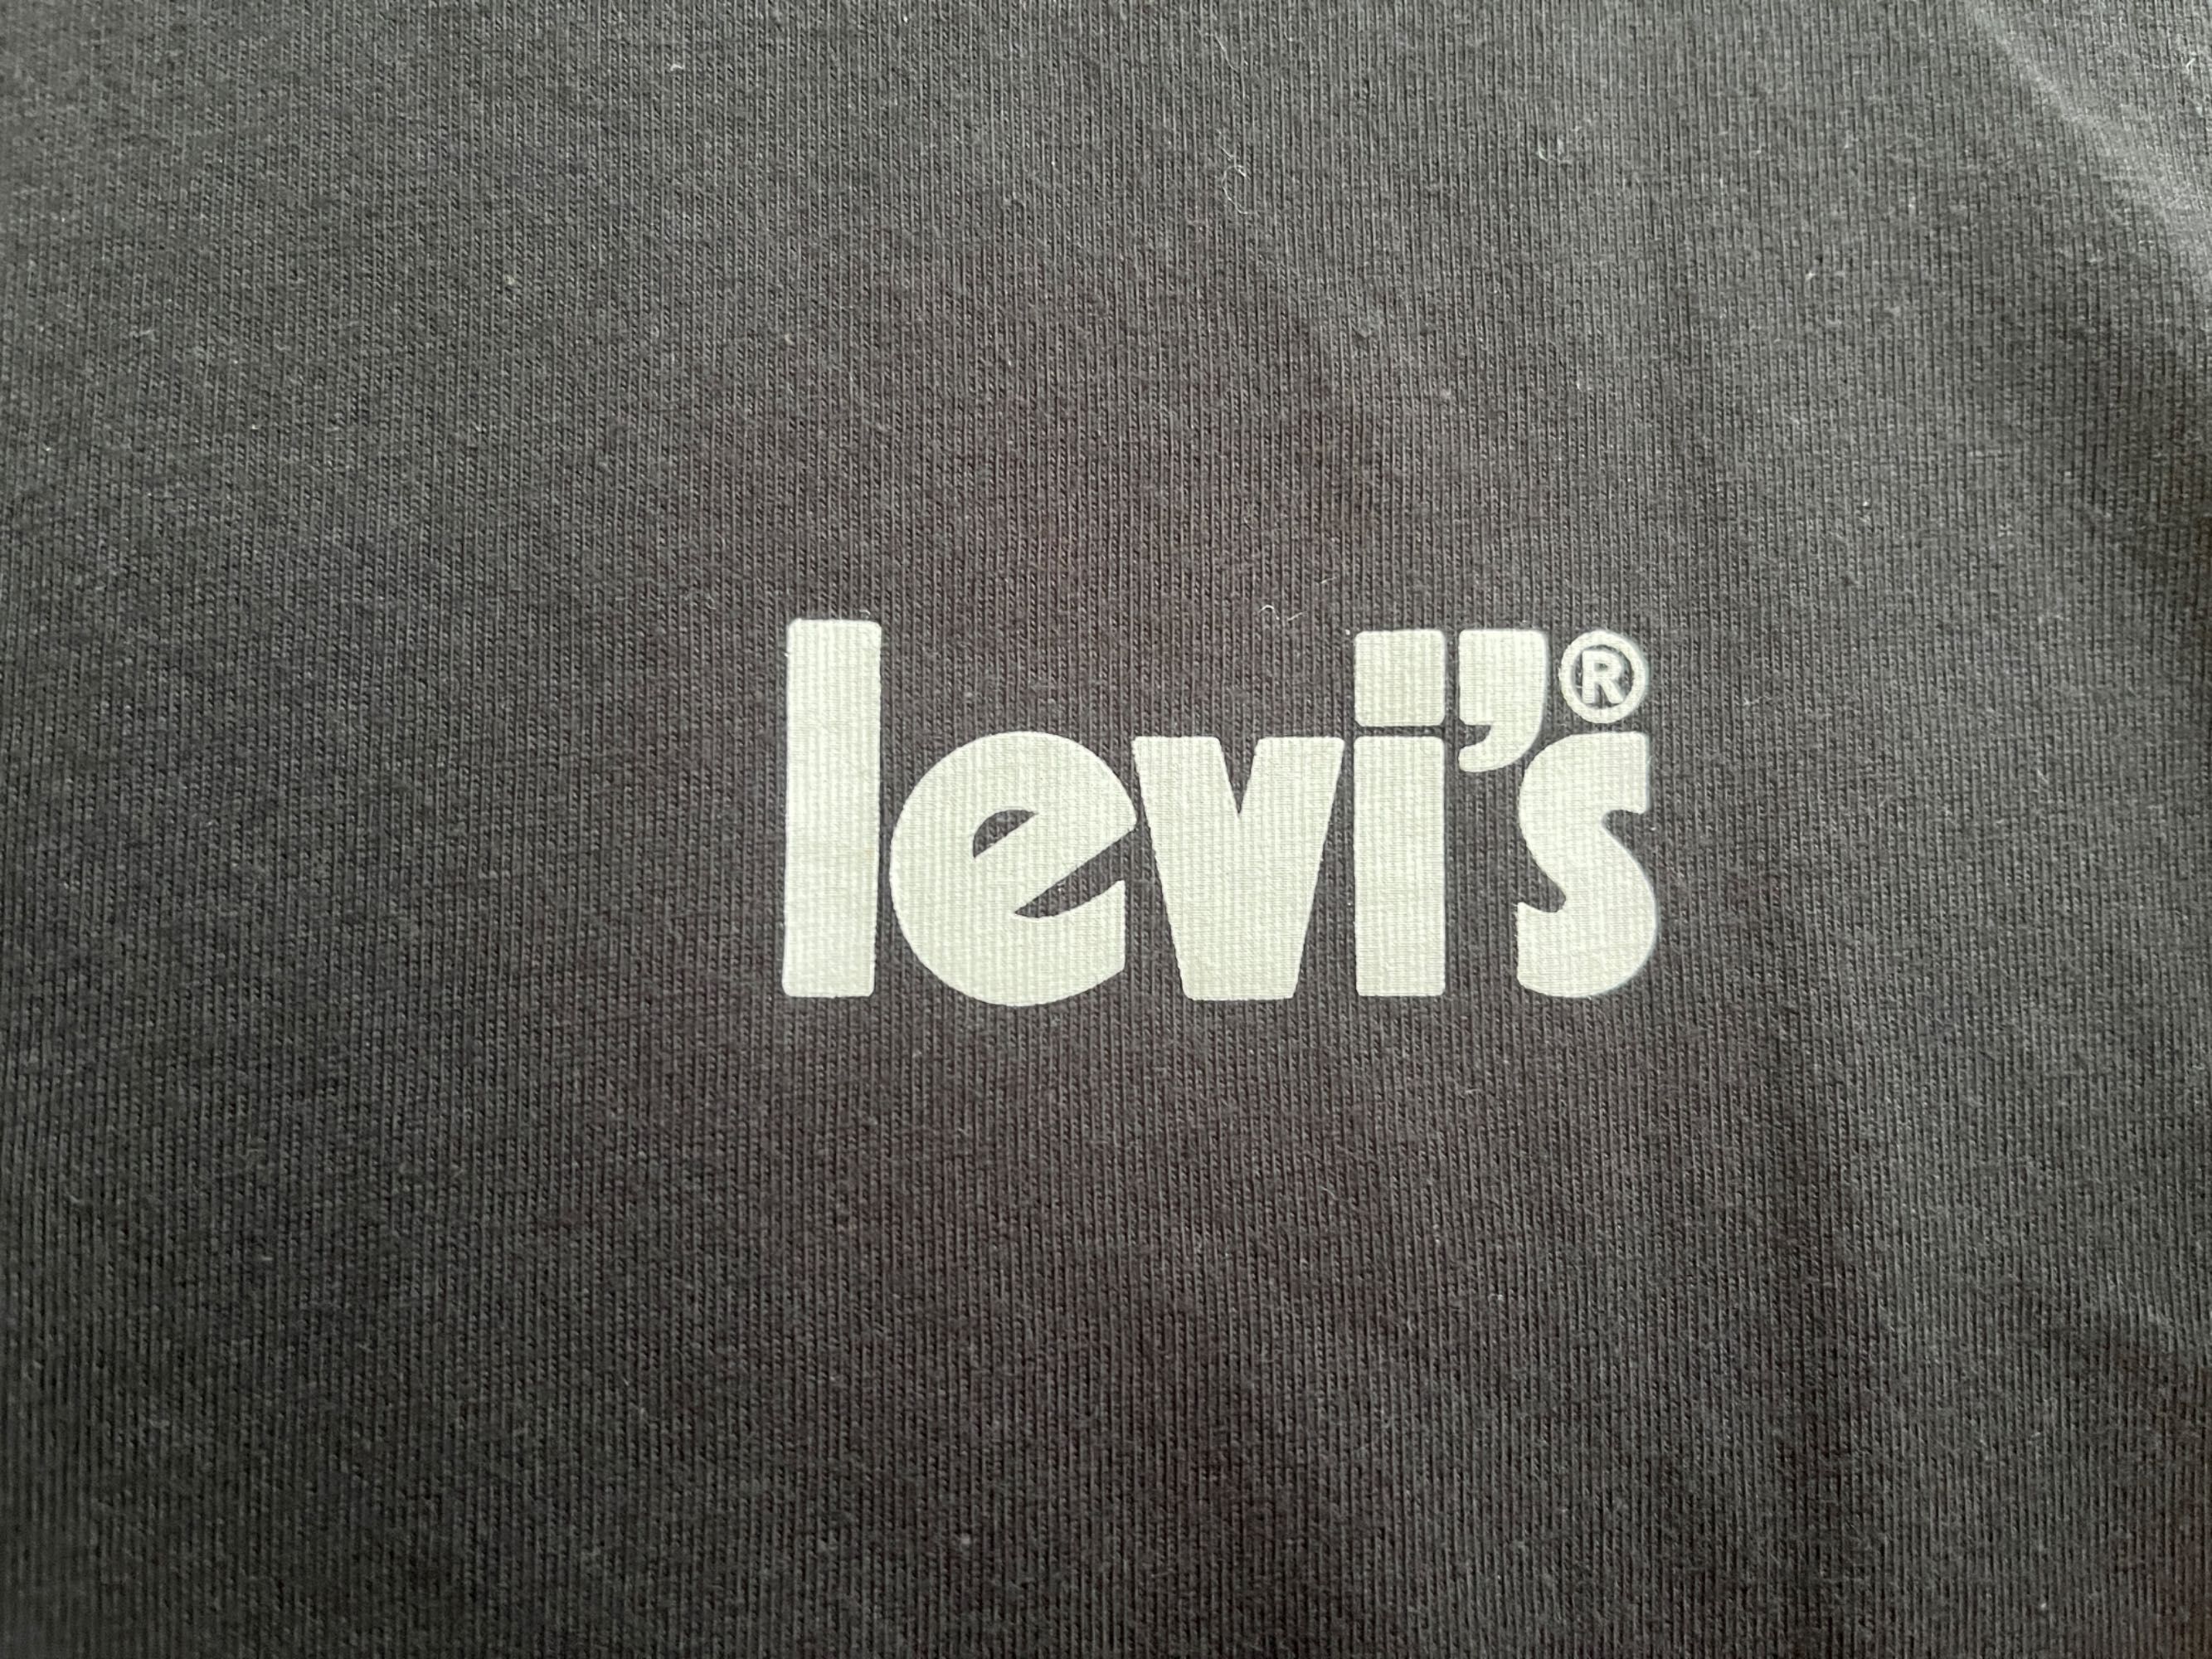 Levi’s t-shirt rozmiar S